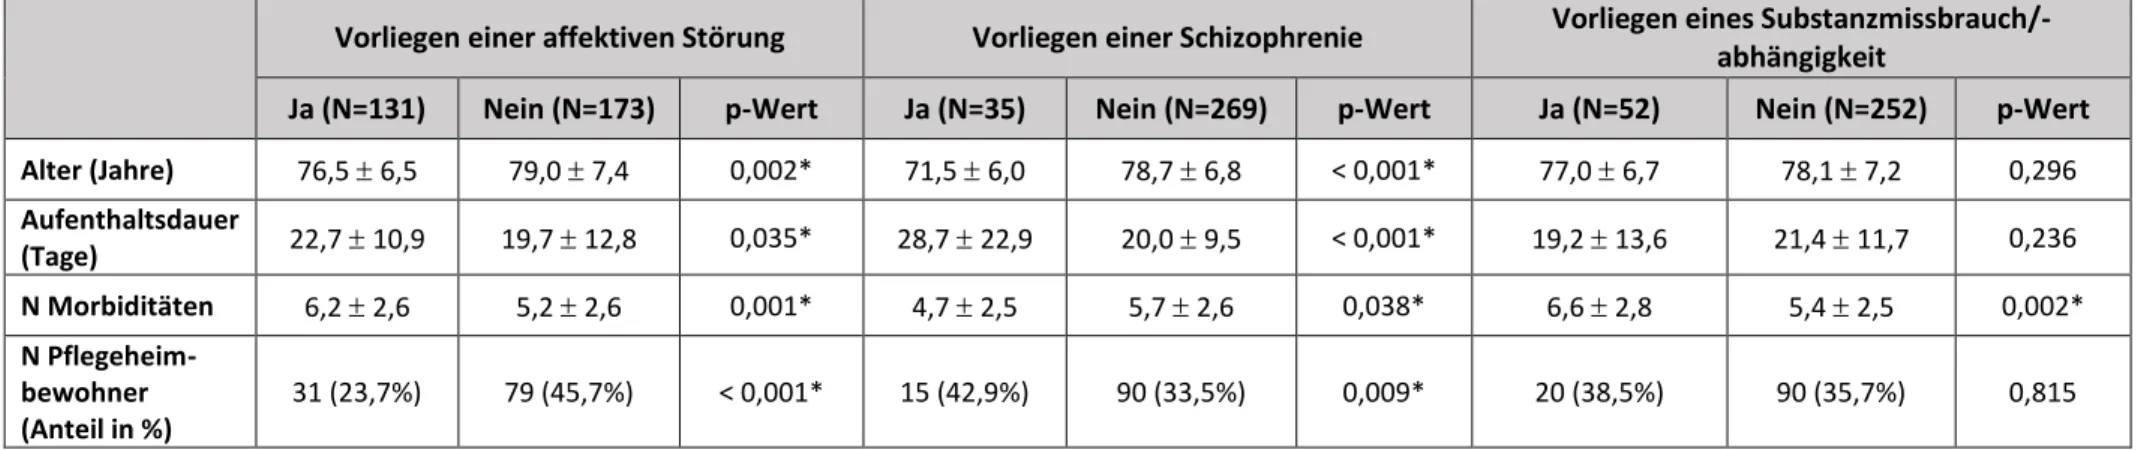 Tabelle 7: Charakteristika der psychiatrischen Diagnosegruppen affektive Störung, Schizophrenie und Substanzmissbrauch/-abhängigkeit  